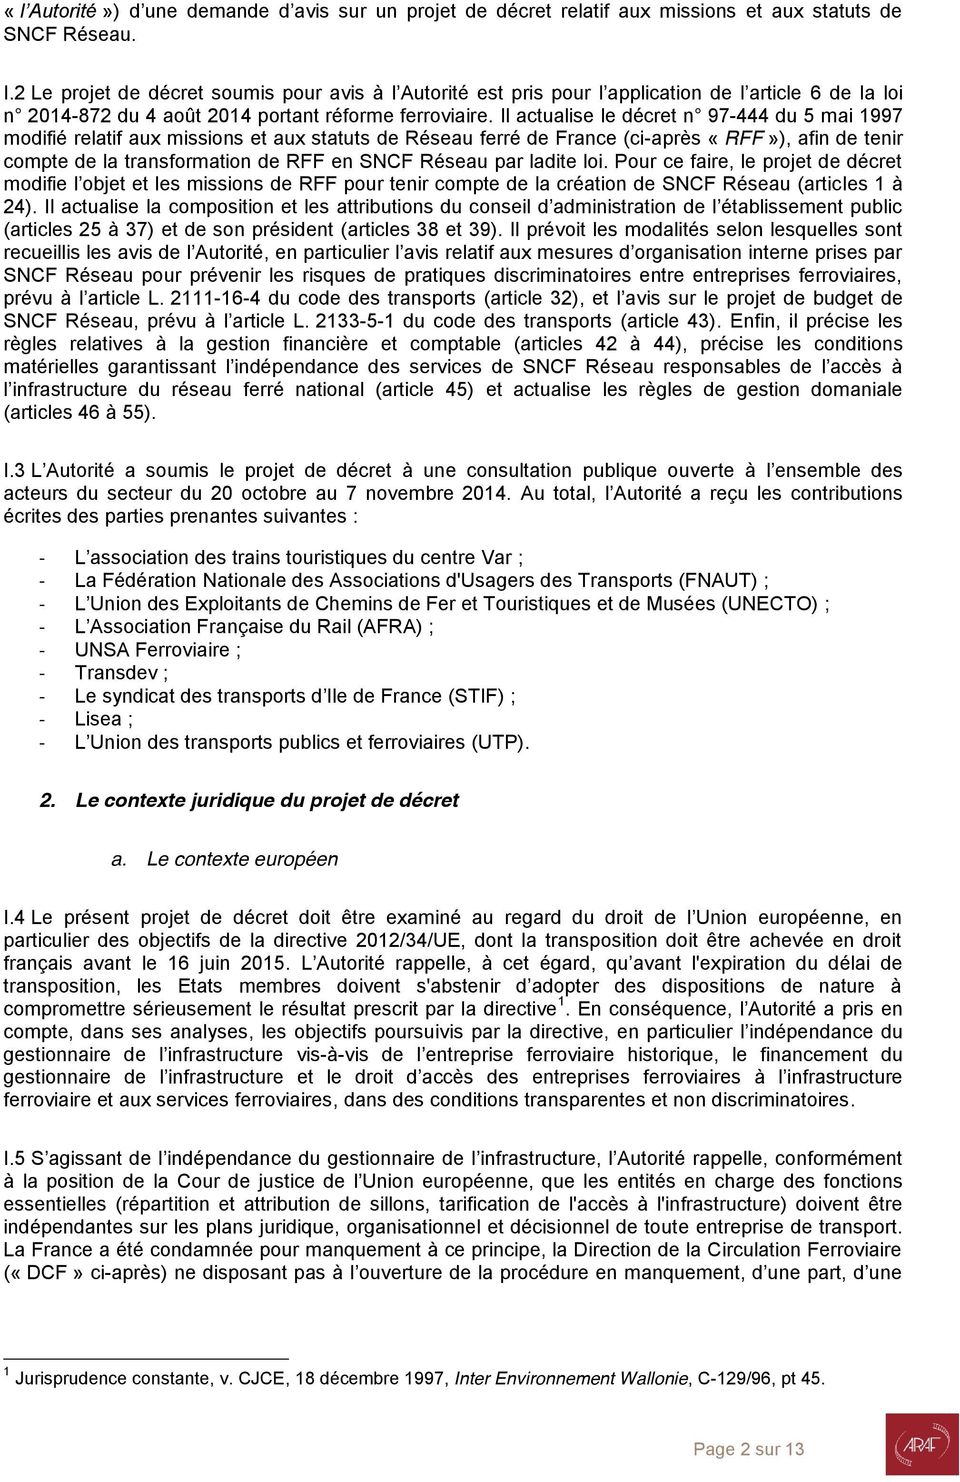 Il actualise le décret n 97-444 du 5 mai 1997 modifié relatif aux missions et aux statuts de Réseau ferré de France (ci-après «RFF»), afin de tenir compte de la transformation de RFF en SNCF Réseau